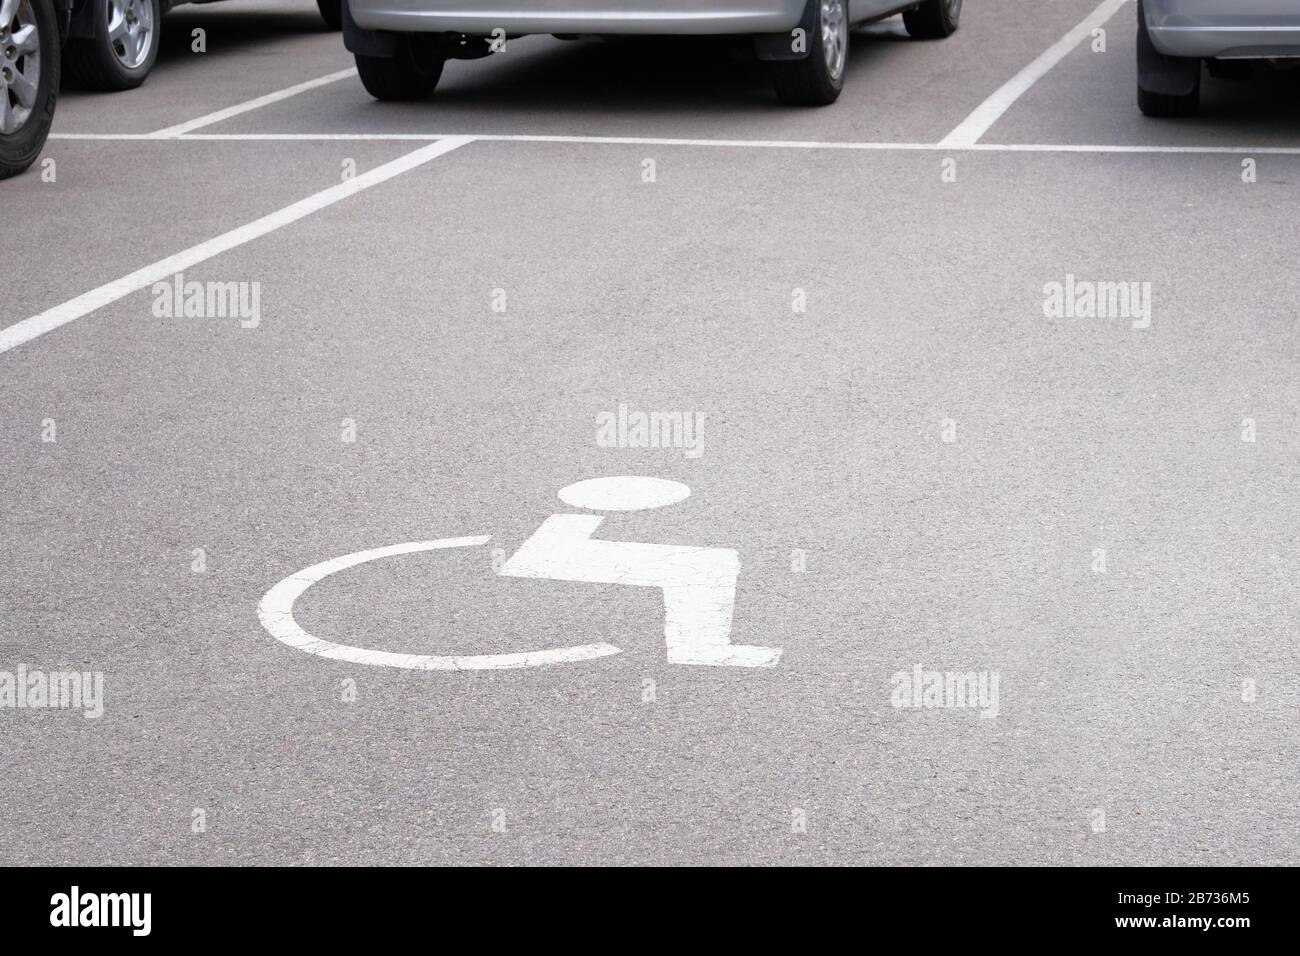 Contrassegno di permesso posto auto per disabili sulla strada asfaltata. Simbolo di segnaletica stradale su strada. Foto Stock